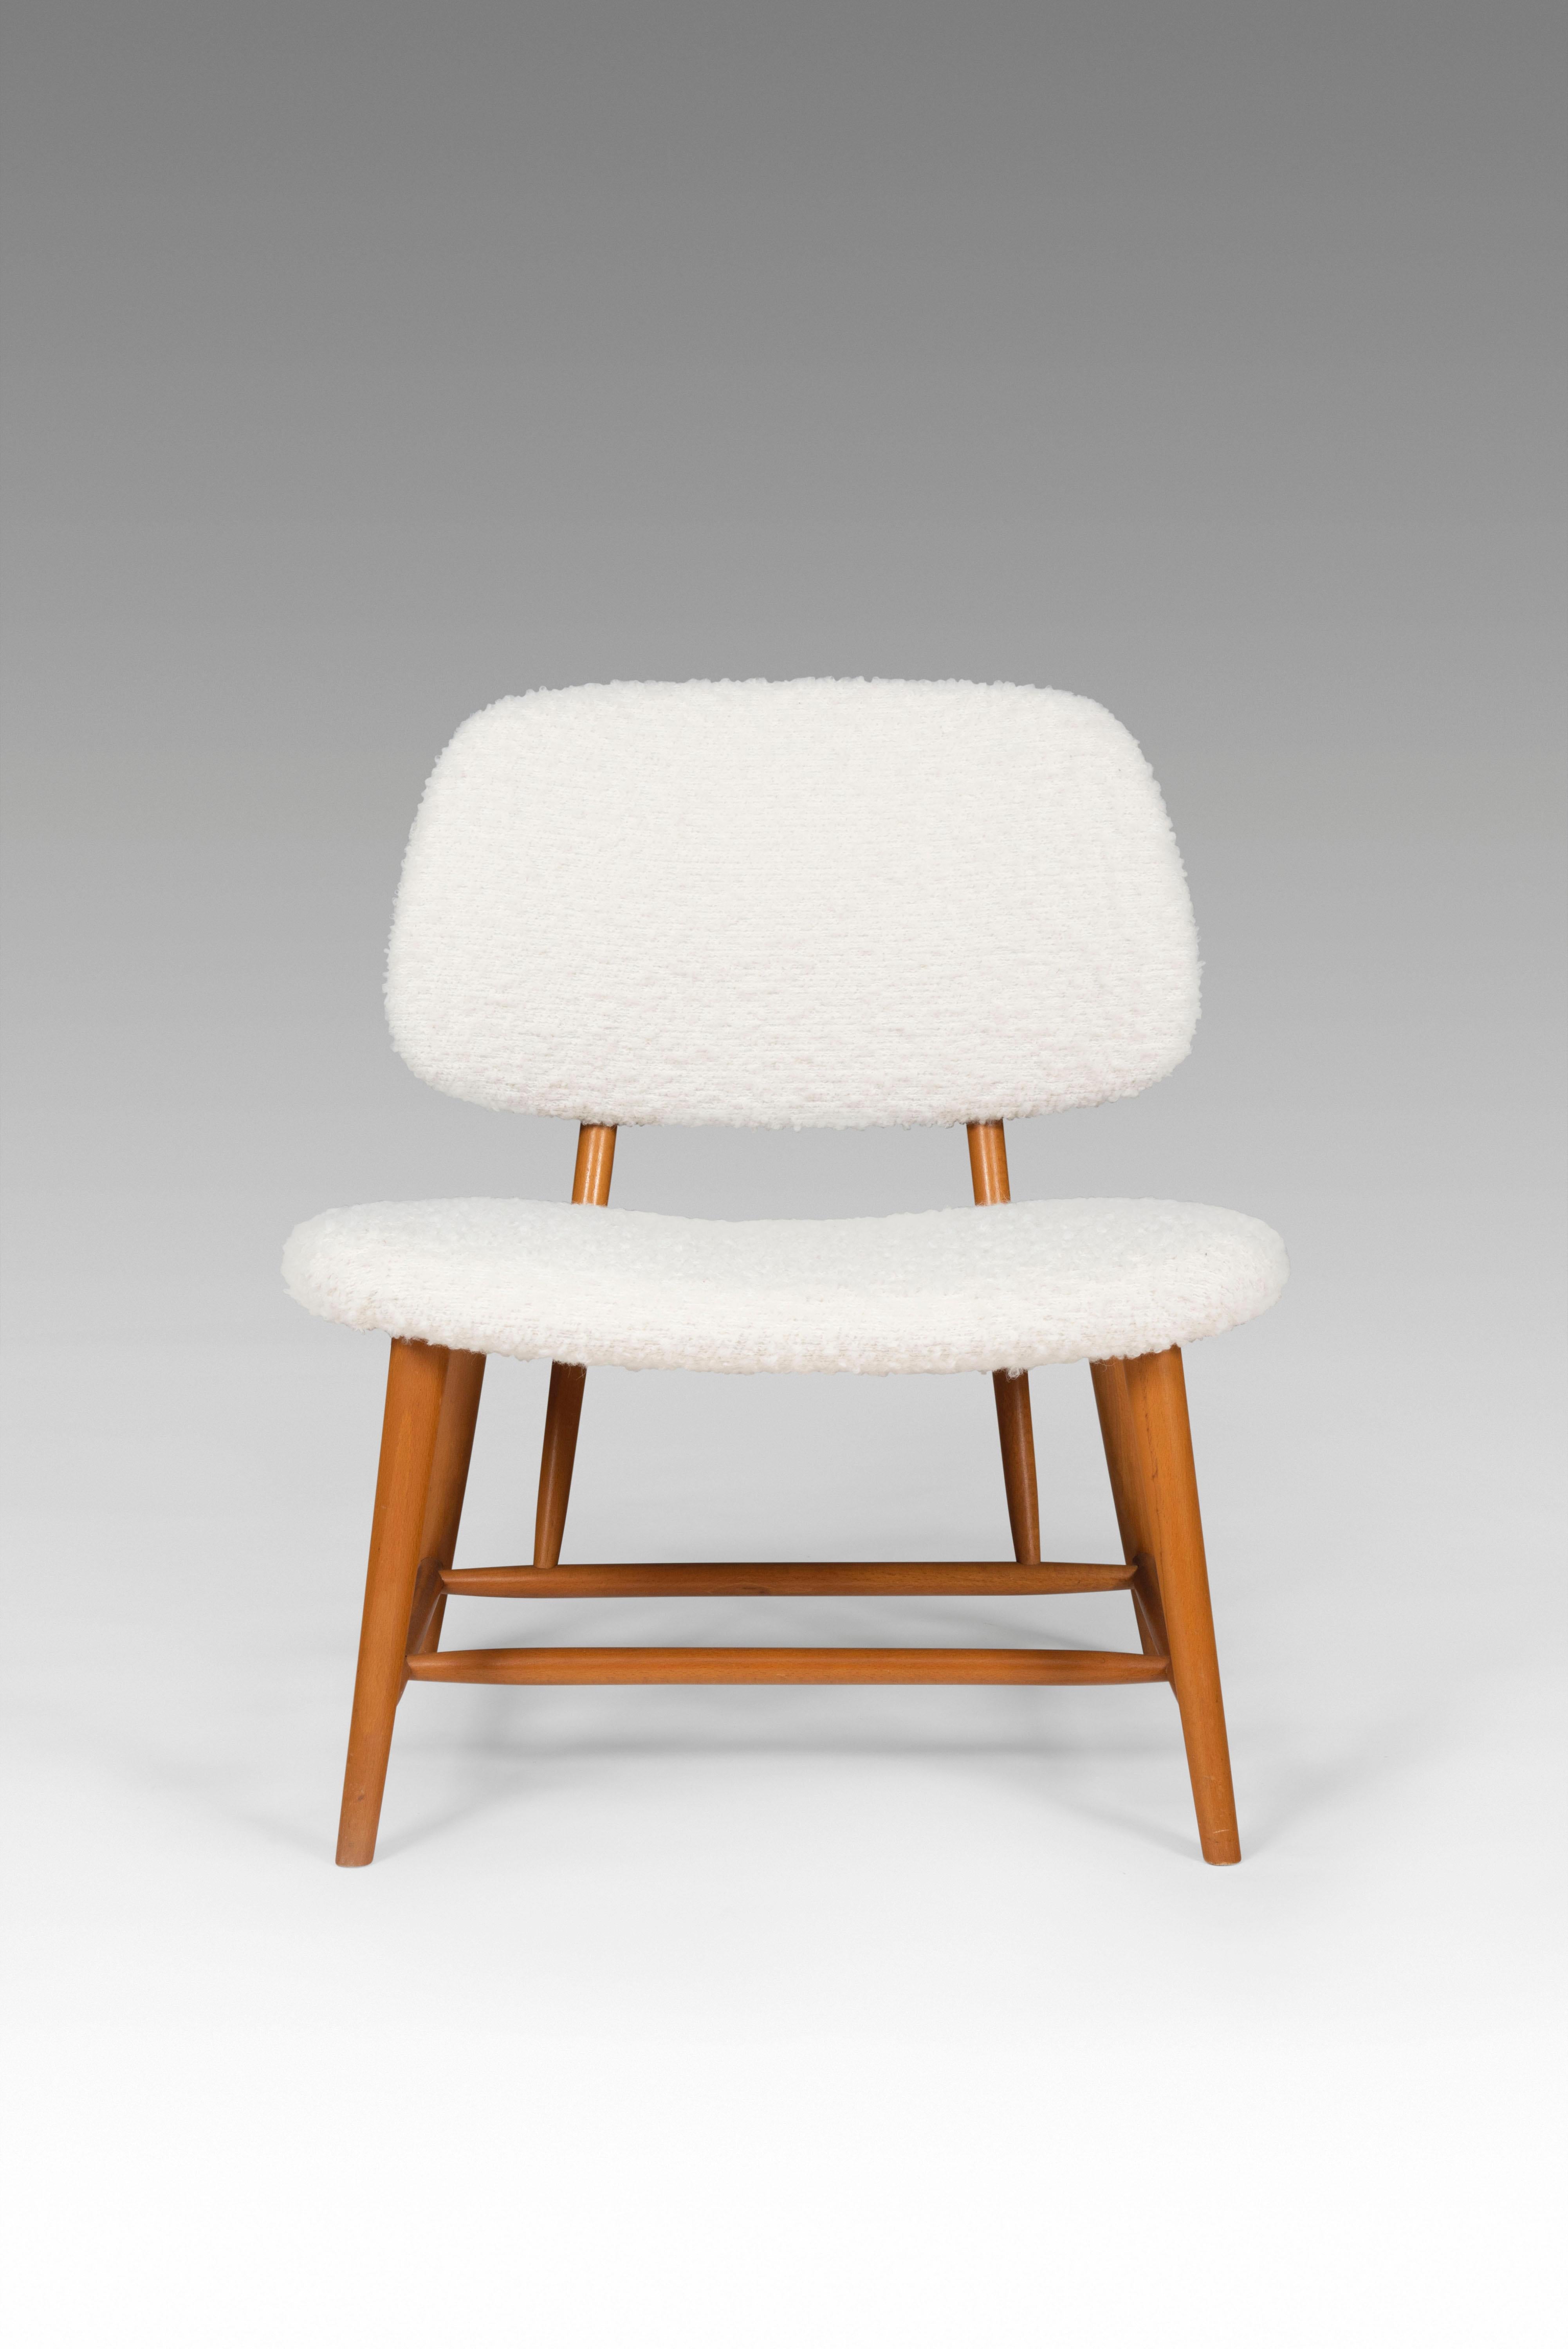 Dieses Paar Loungesessel wurde 1953 vom schwedischen Möbeldesigner Alf Svensson entworfen. Hergestellt von Studio Ljungs Industrier AB Malmö in den 1950er Jahren. Das Modell heißt 